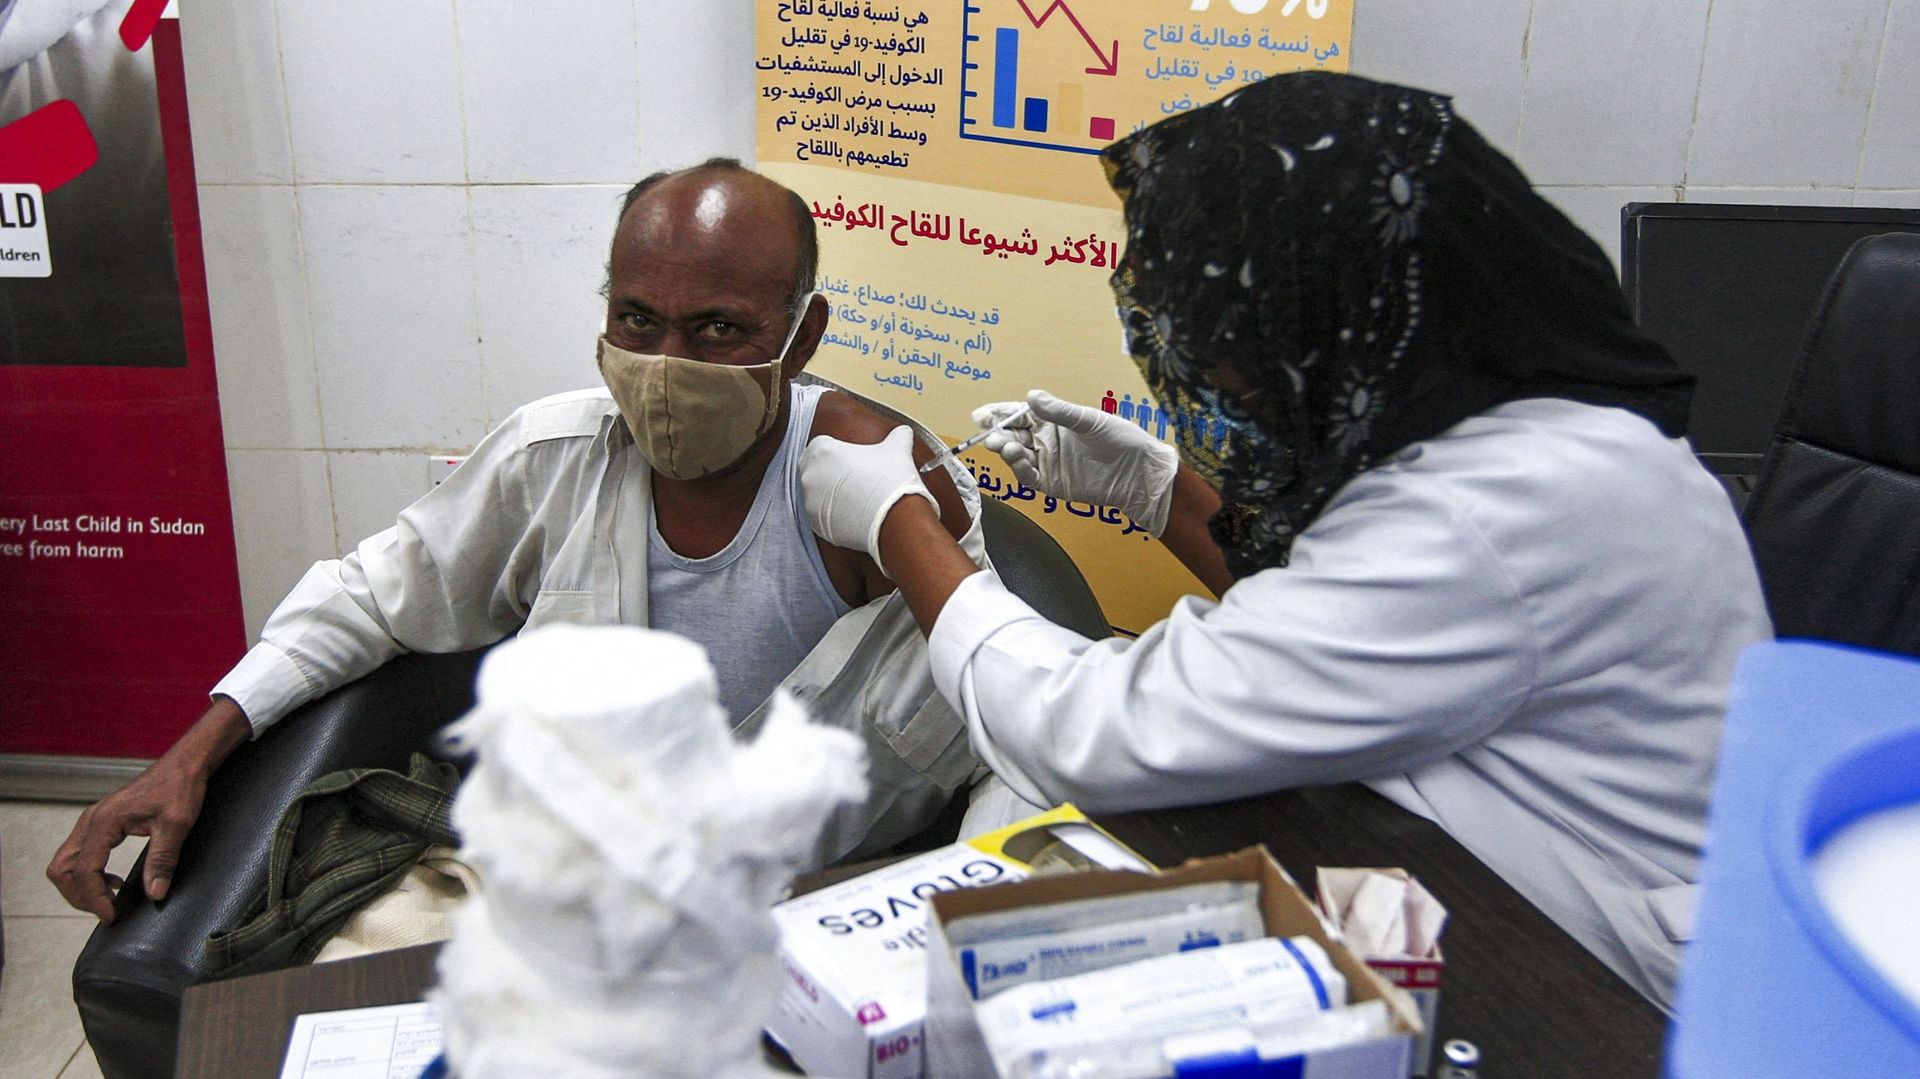 La lenteur de la vaccination en Afrique s'explique par "des problèmes de pénurie, de financement, un manque de personnel qualifié" selon l'OMS.